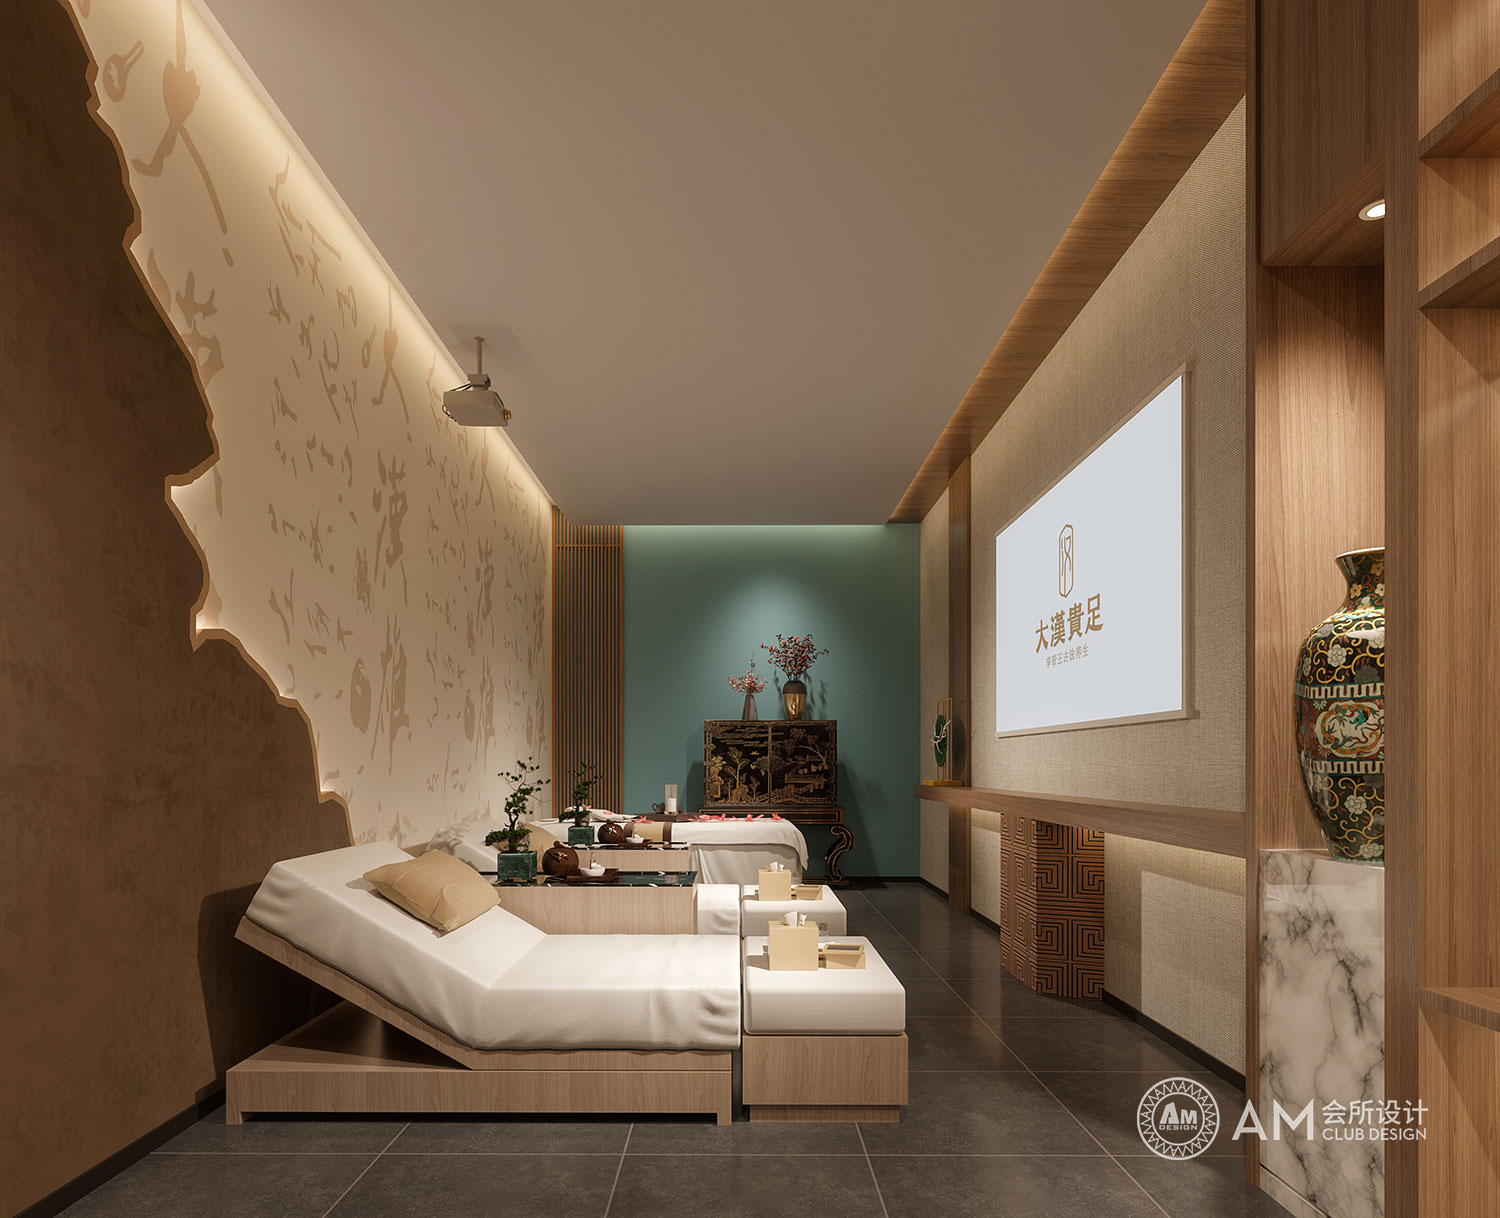 AM DESIGN | Design of spa room of Da Han Guizu Spa Club